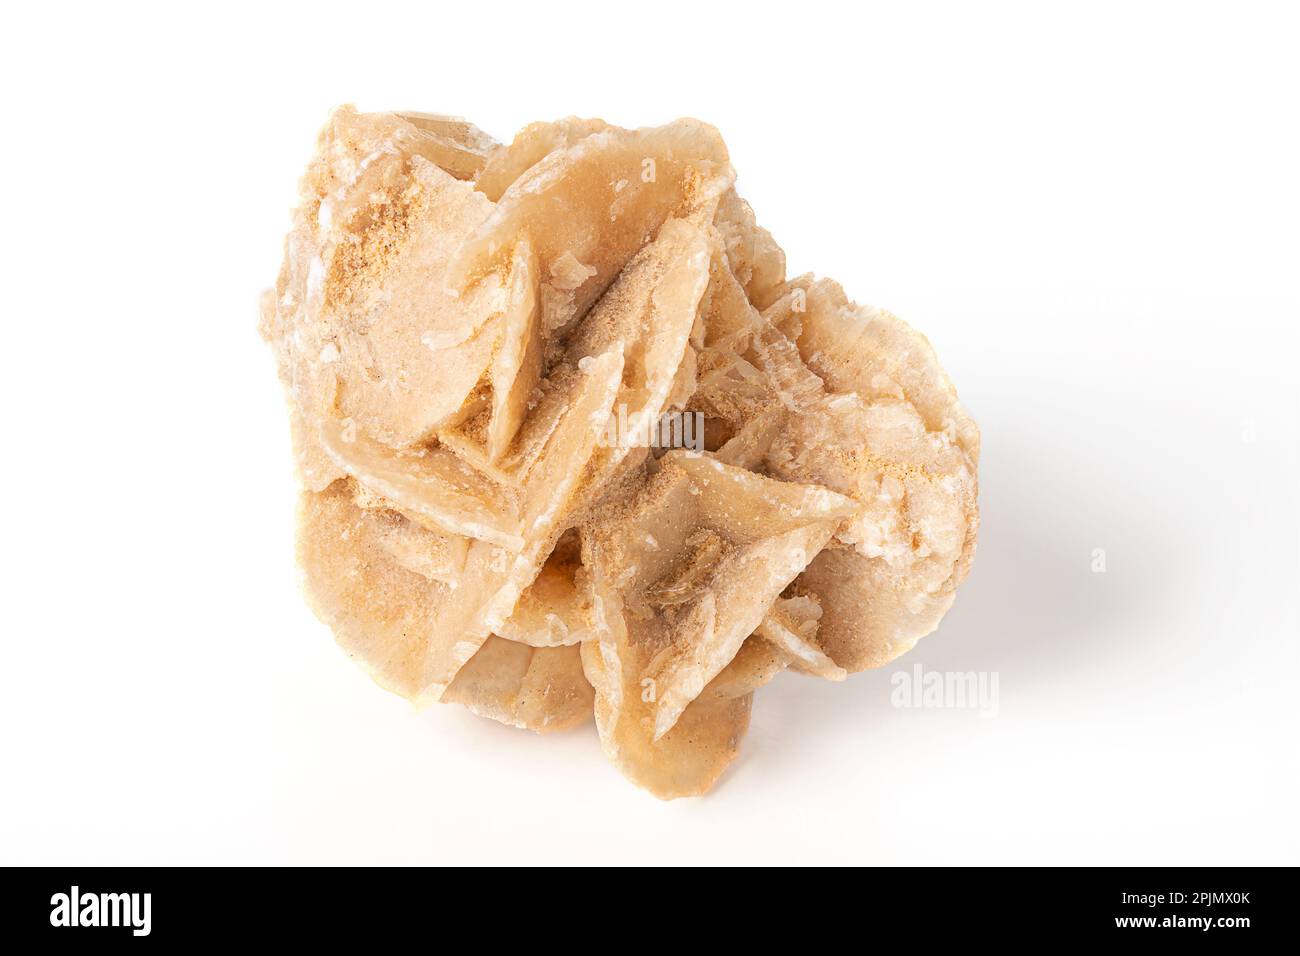 Wüstenrose, Kristall aus Tunesien, Vorderansicht. Auch bekannt als Rose Rock, Sahara, Selenit, Gips und Barite Rose. Rosenartige Formation. Stockfoto